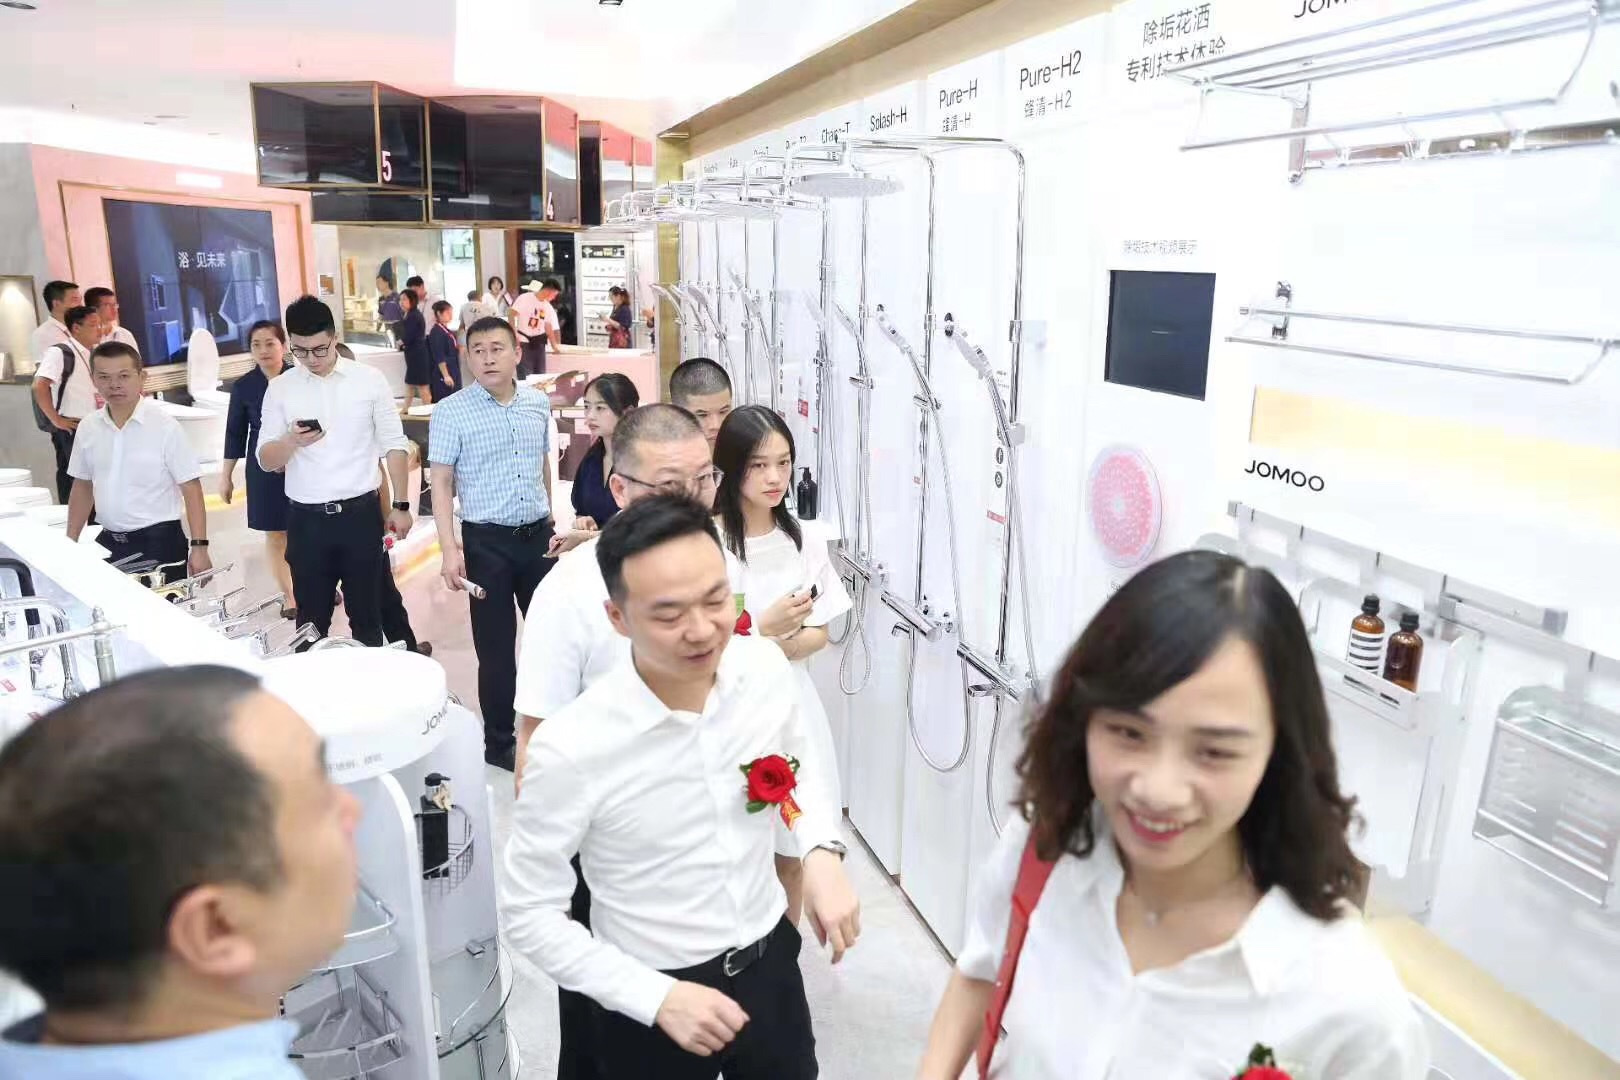 九牧阳卫高端定制店在重庆开业 引领品质生活新篇章